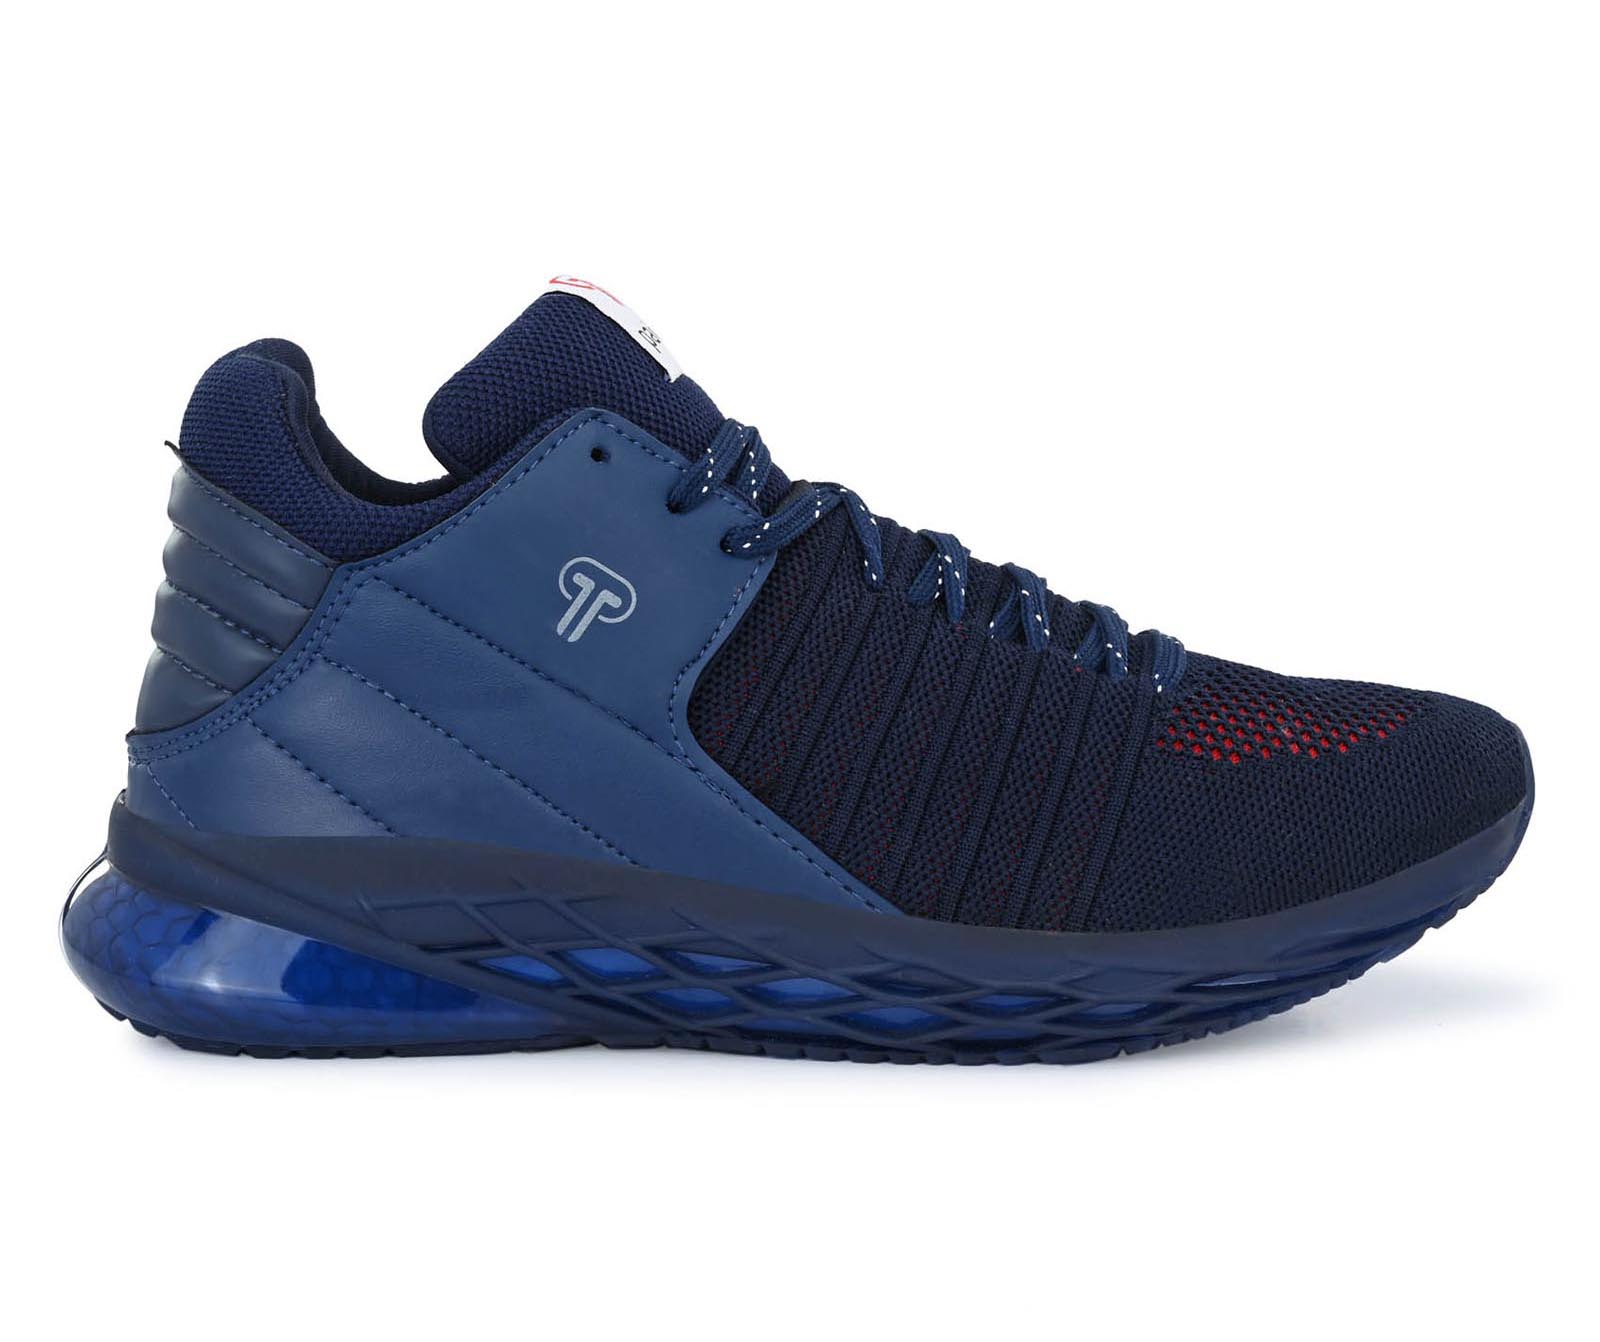 Pair-it Men's Sports Shoes - Blue - LZ-SPORTS023